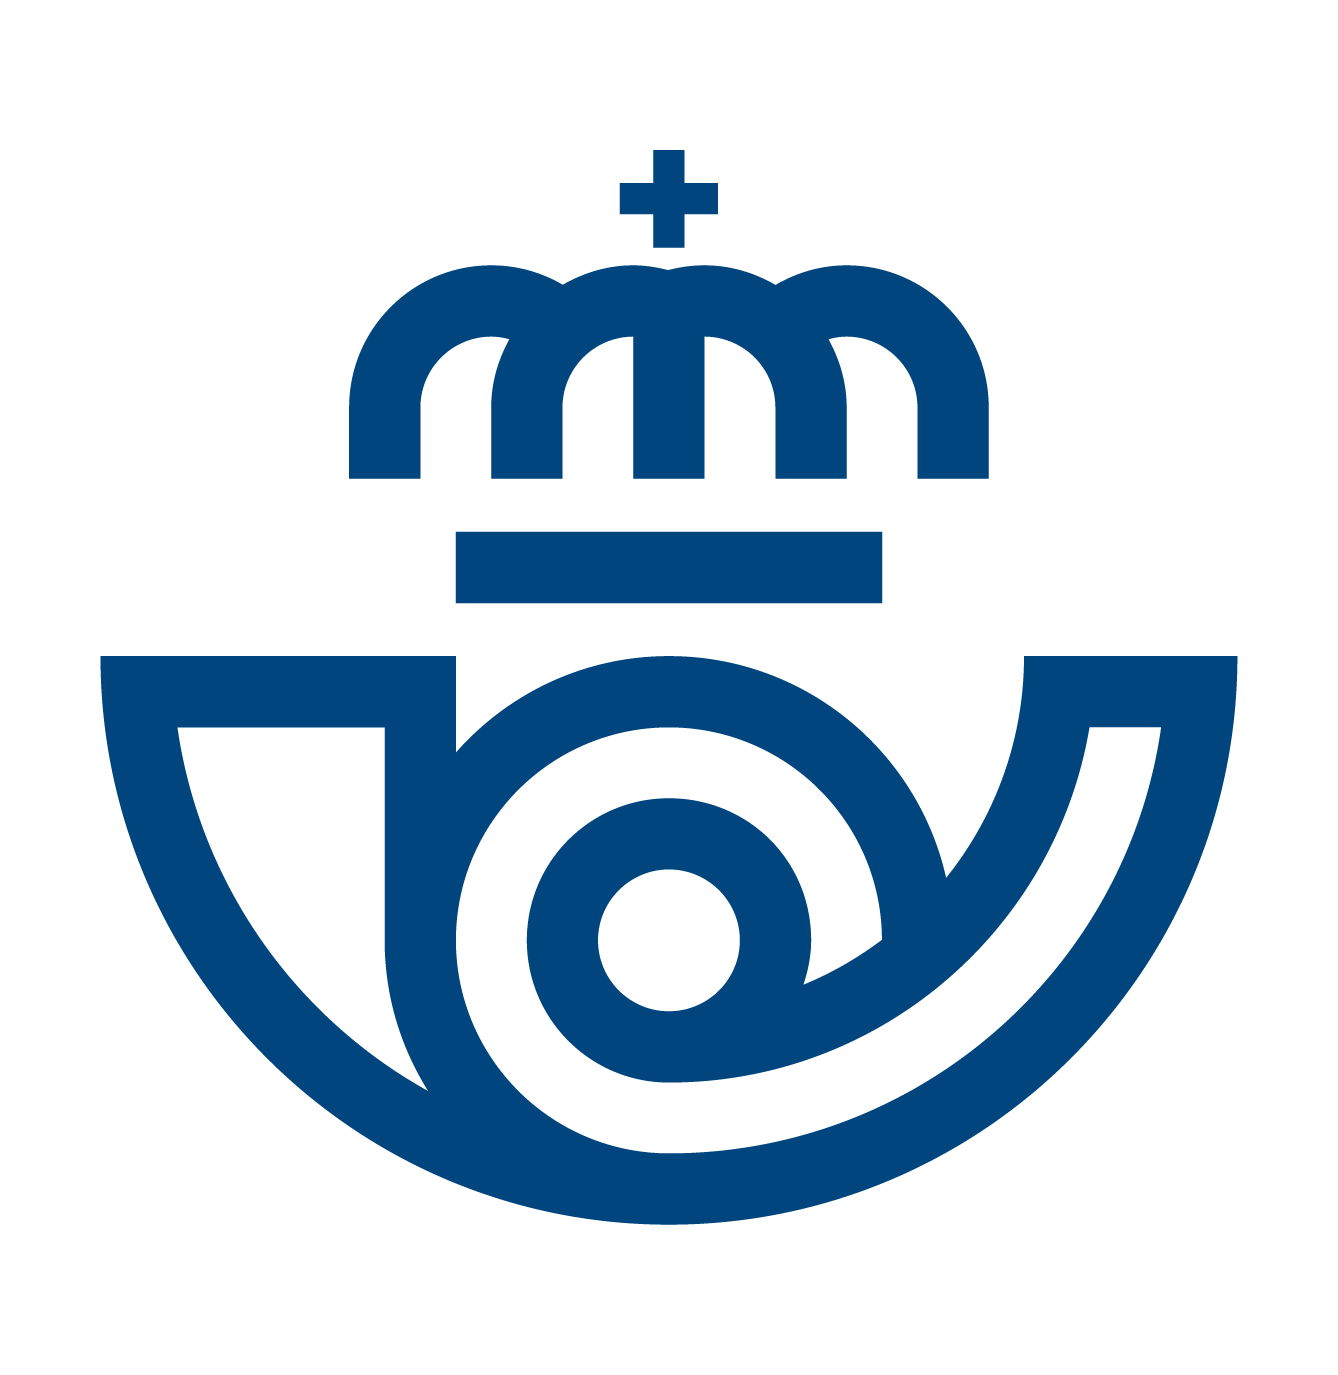 Summa Logo - Brand New: New Logo and Identity for Correos